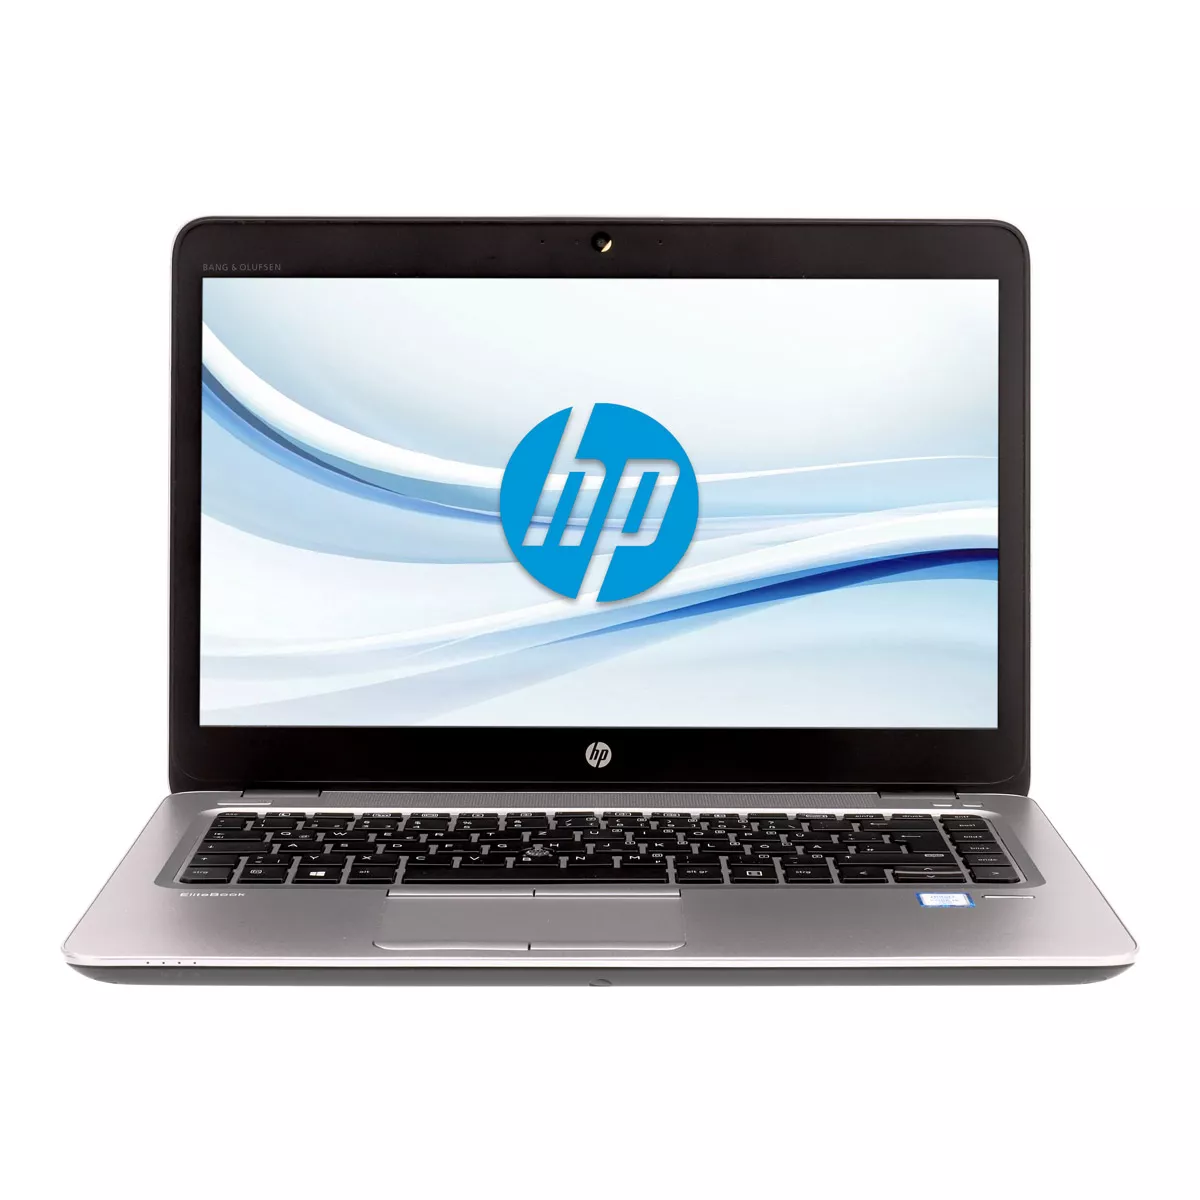 HP EliteBook 840 G4 Core i5 7300U Full-HD 240 GB M.2 SSD Webcam A+